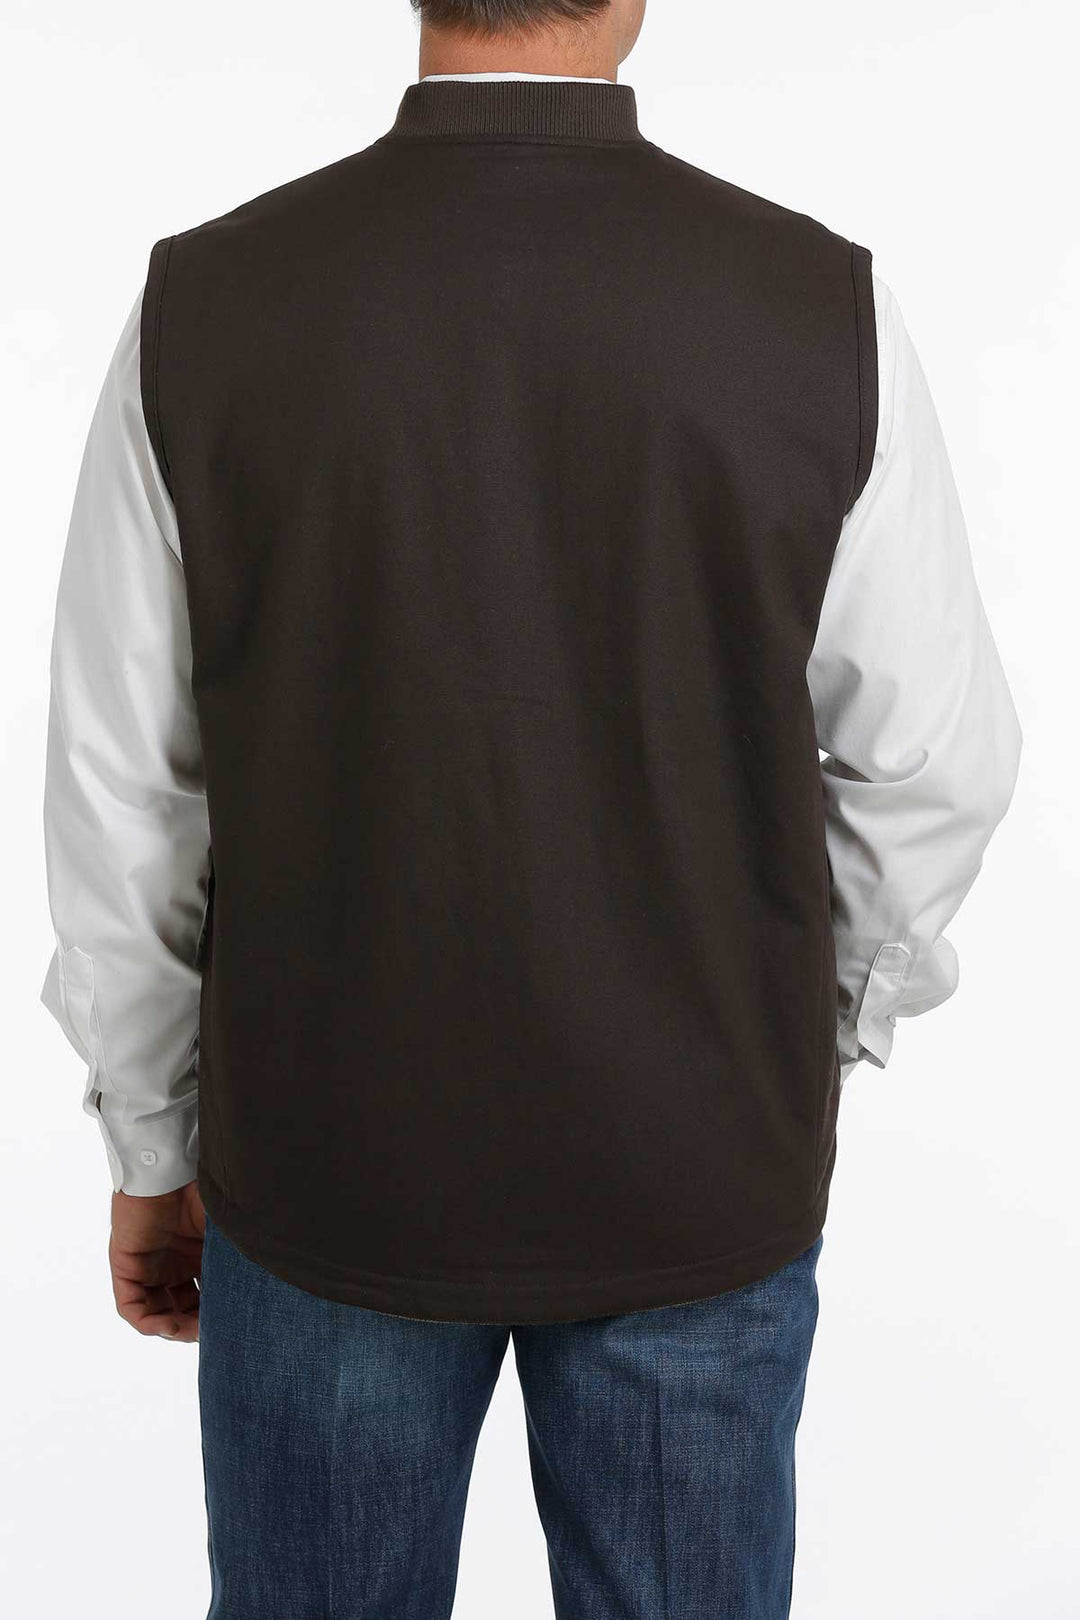 Cinch Men's Brown Reversible Vest